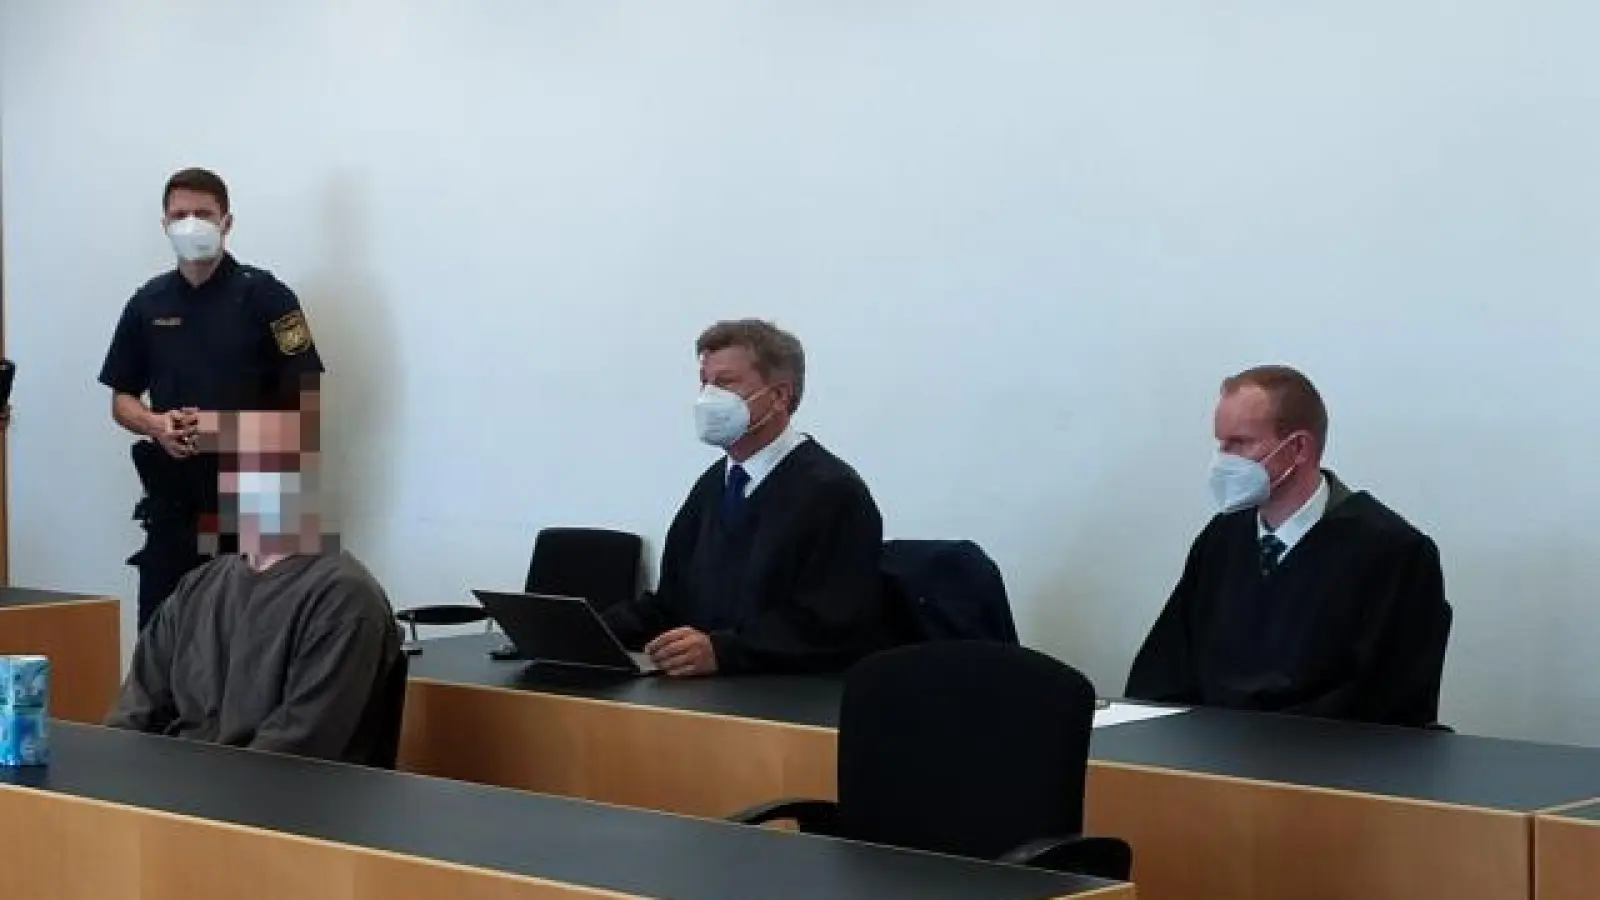 Unzufrieden mit dem Urteil:   Verteidiger Werner Ruisinger (Mitte) und sein Kollege Florian Schraml können die Entscheidung über ihren Mandanten nicht nachvollziehen. 		Foto: Patrick Bruckner (Foto: Patrick Bruckner)